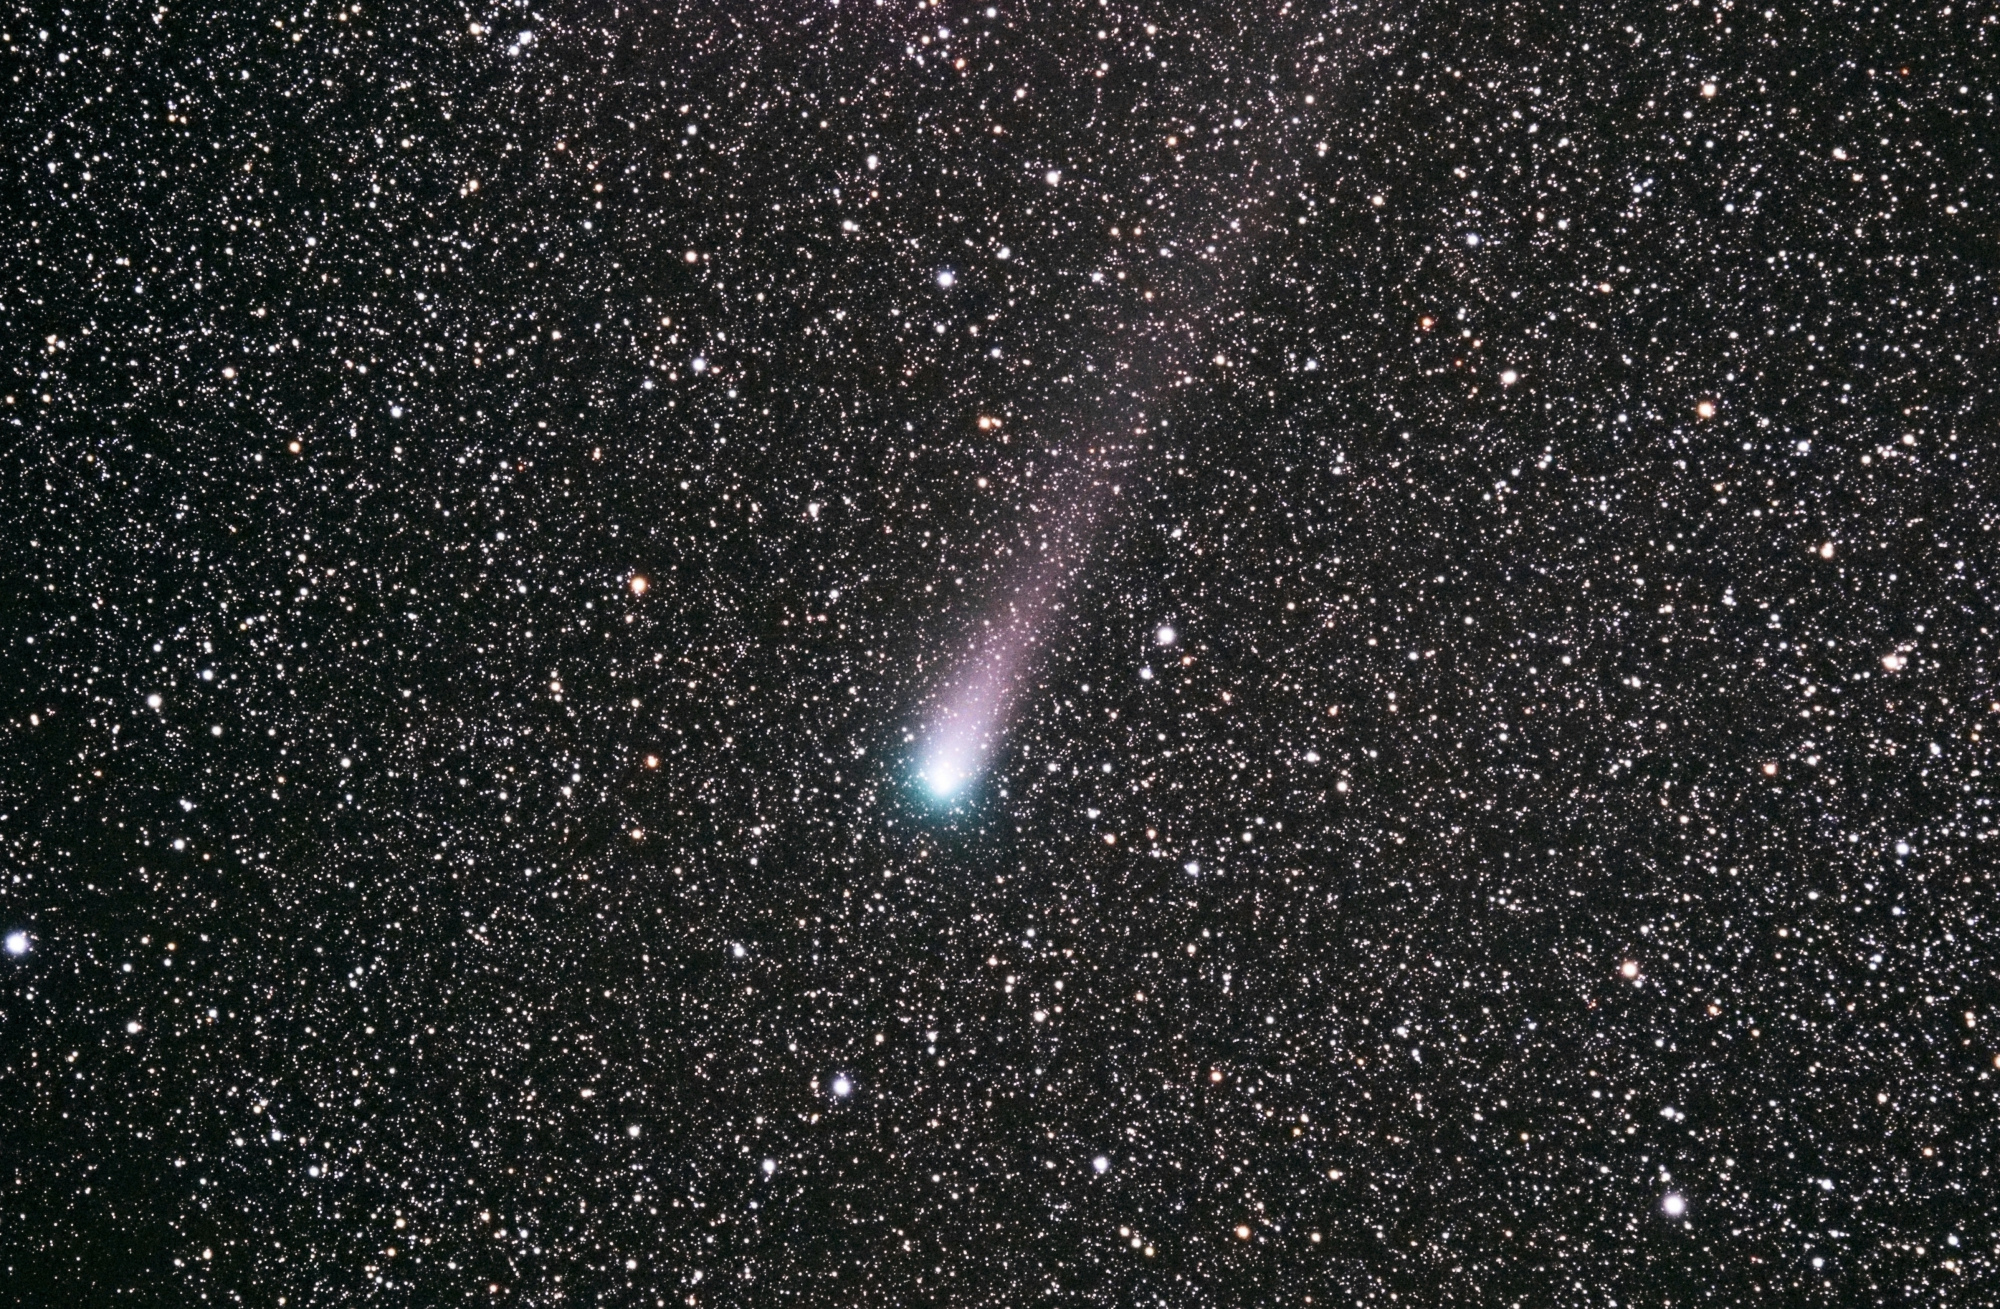 astro_comete.jpg.03e63aea28ac7cac06be19d5a757fdf6.thumb.jpg.b2f4f0deb024edf166994f4a8335846c.jpg